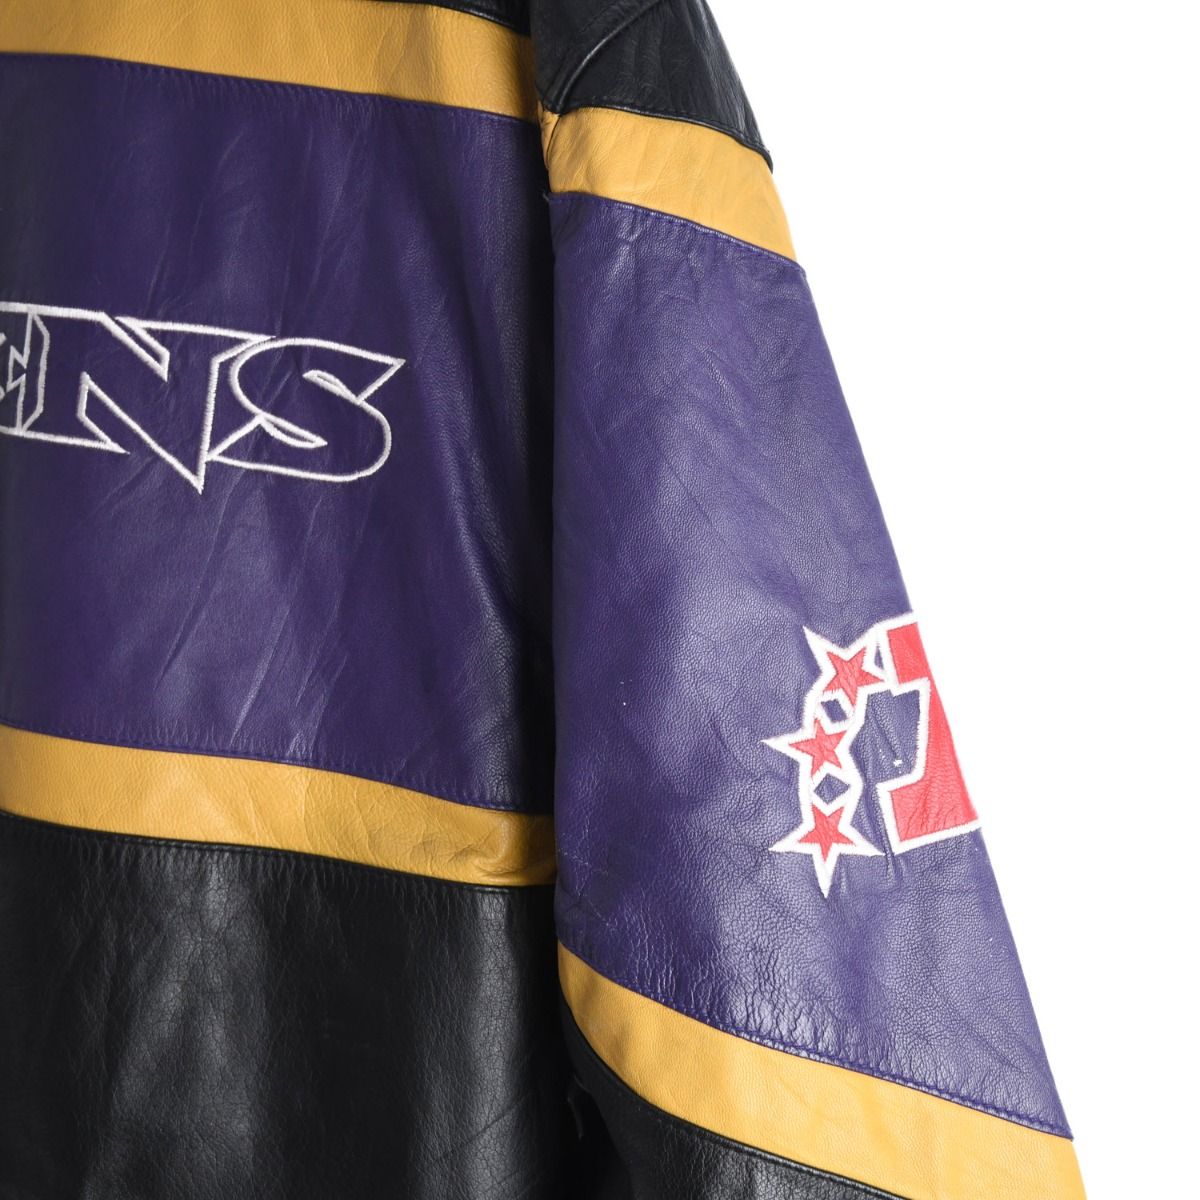 Baltimore Ravens X Starter 1990s Jacket 